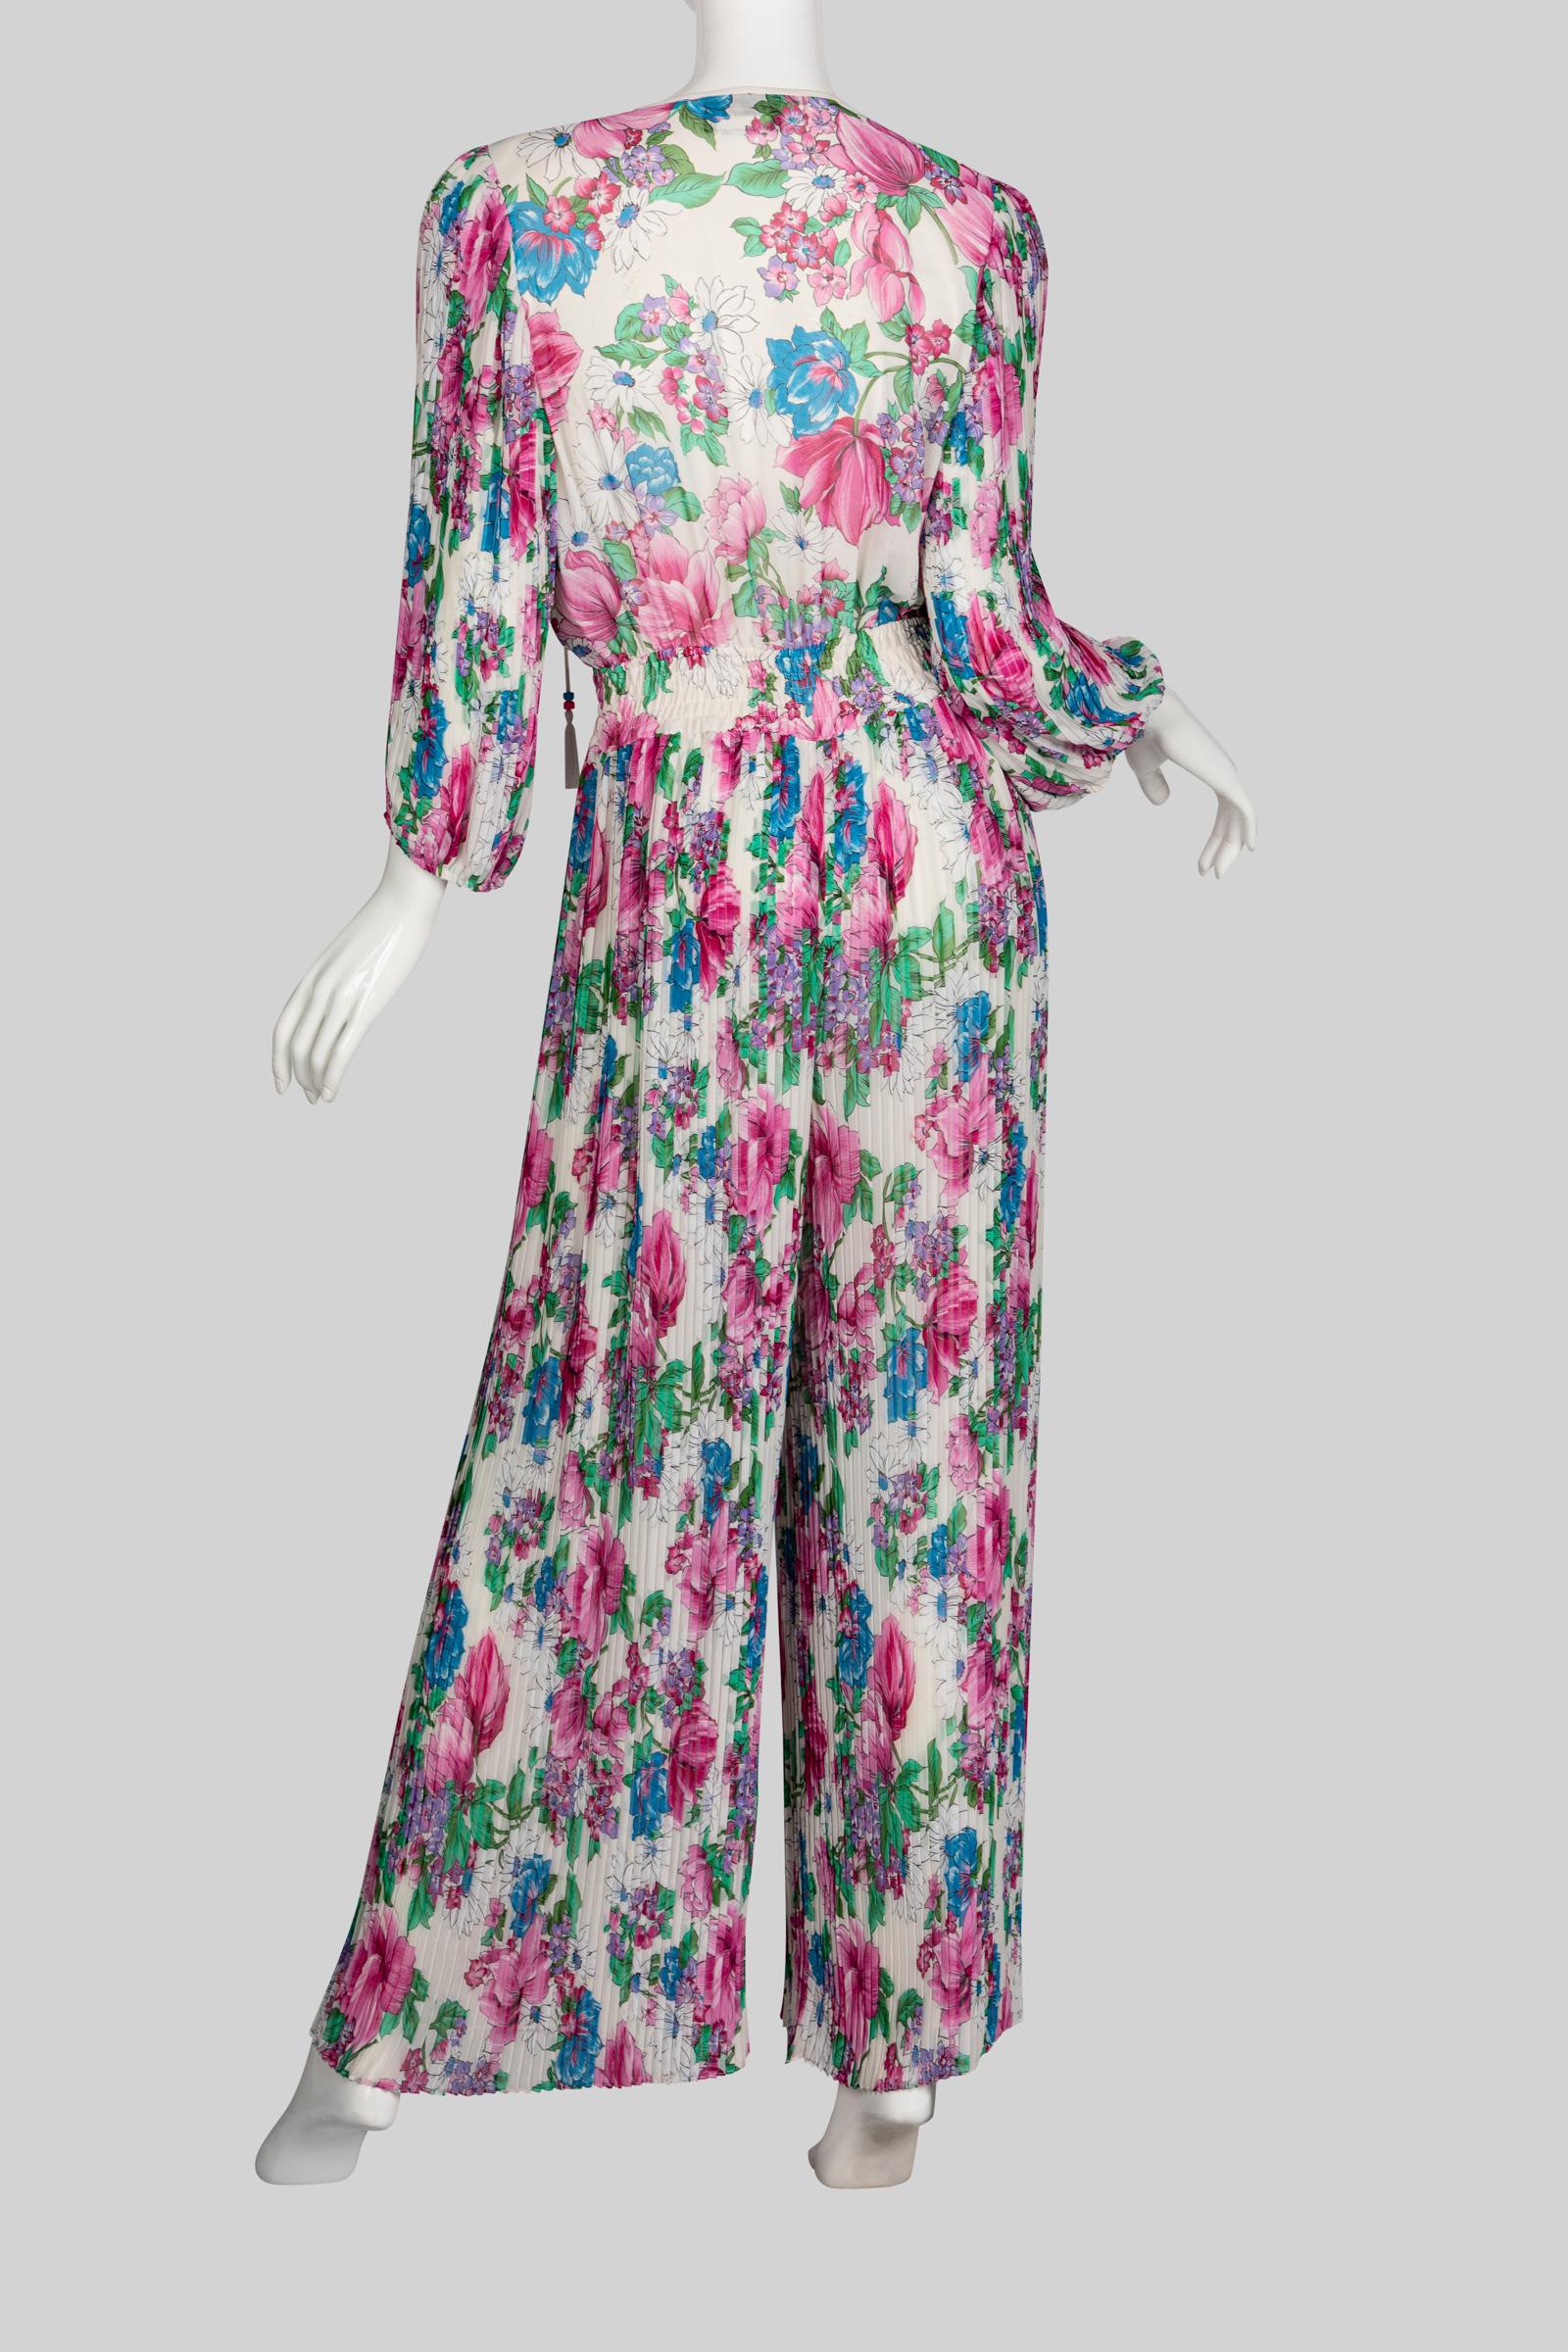  Diane Freis Floral Chiffon Jumpsuit, 1980s For Sale 1